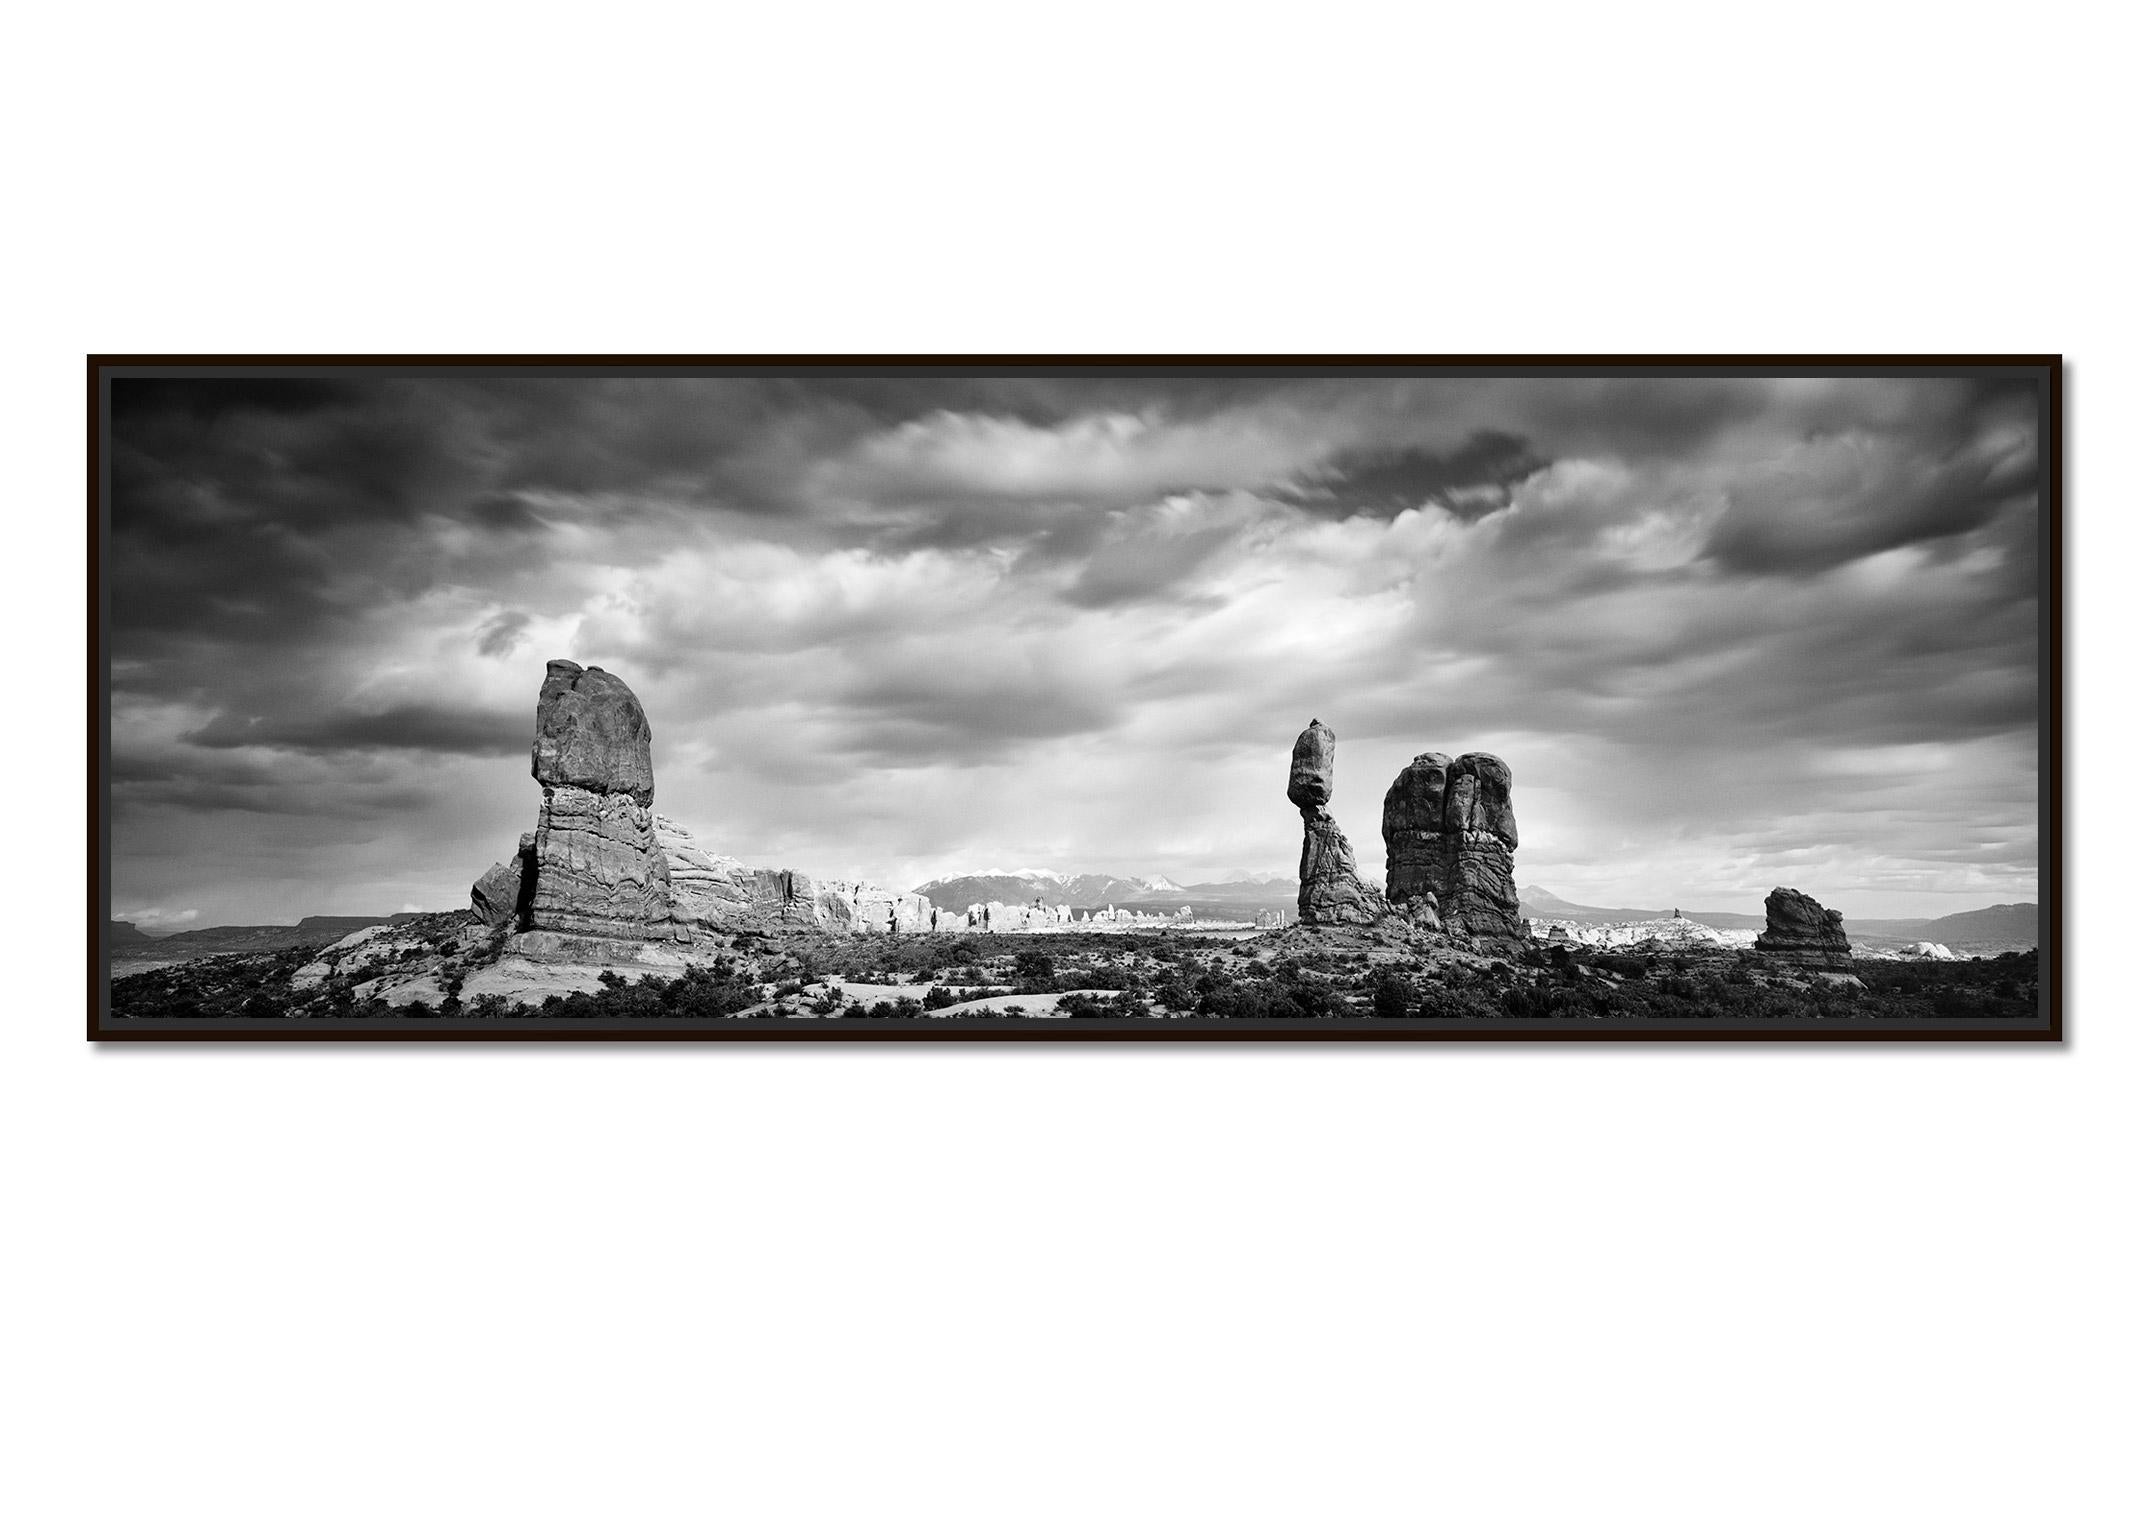 Wild West Panorama, Utah National Park, USA, Schwarz-Weiß-Landschaftsfotografie – Photograph von Gerald Berghammer